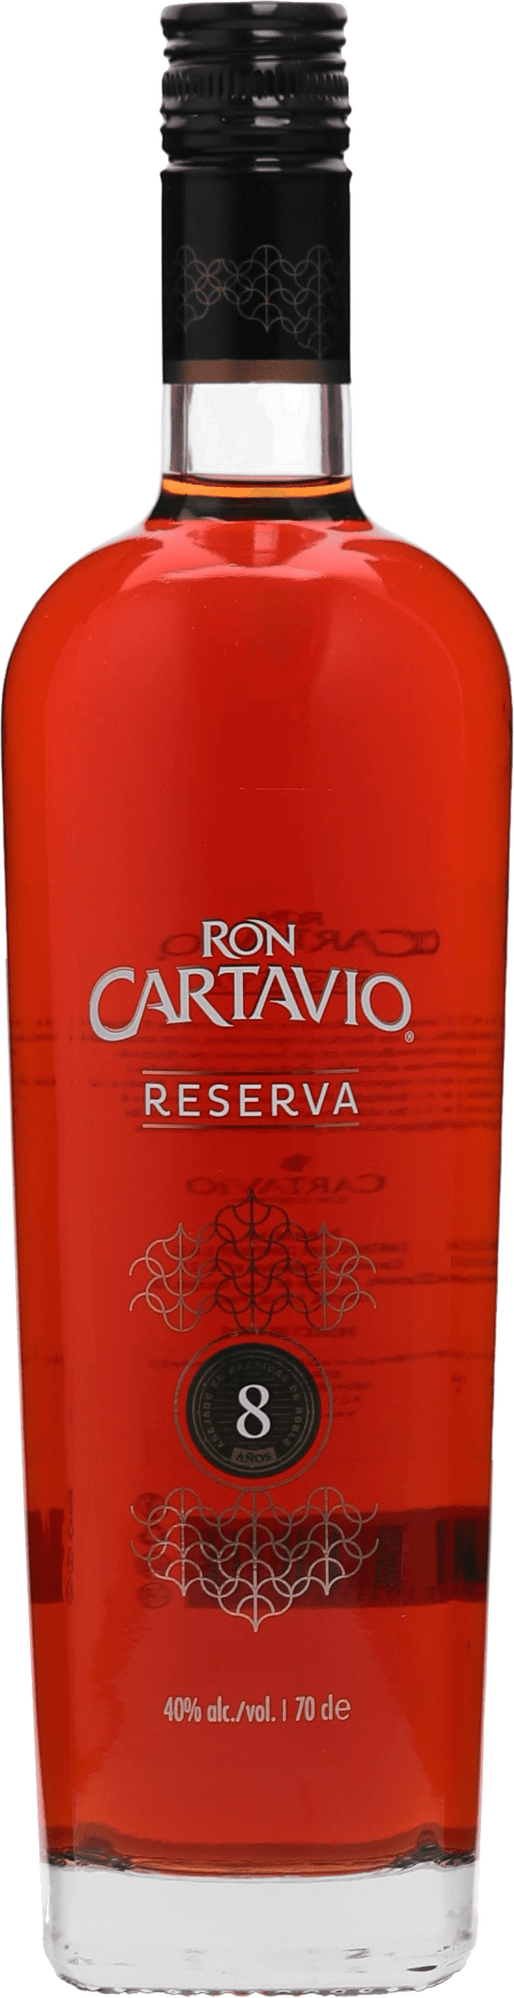 Ron Cartavio Reserva 8 ročný 40% 0,7l (čistá fľaša)